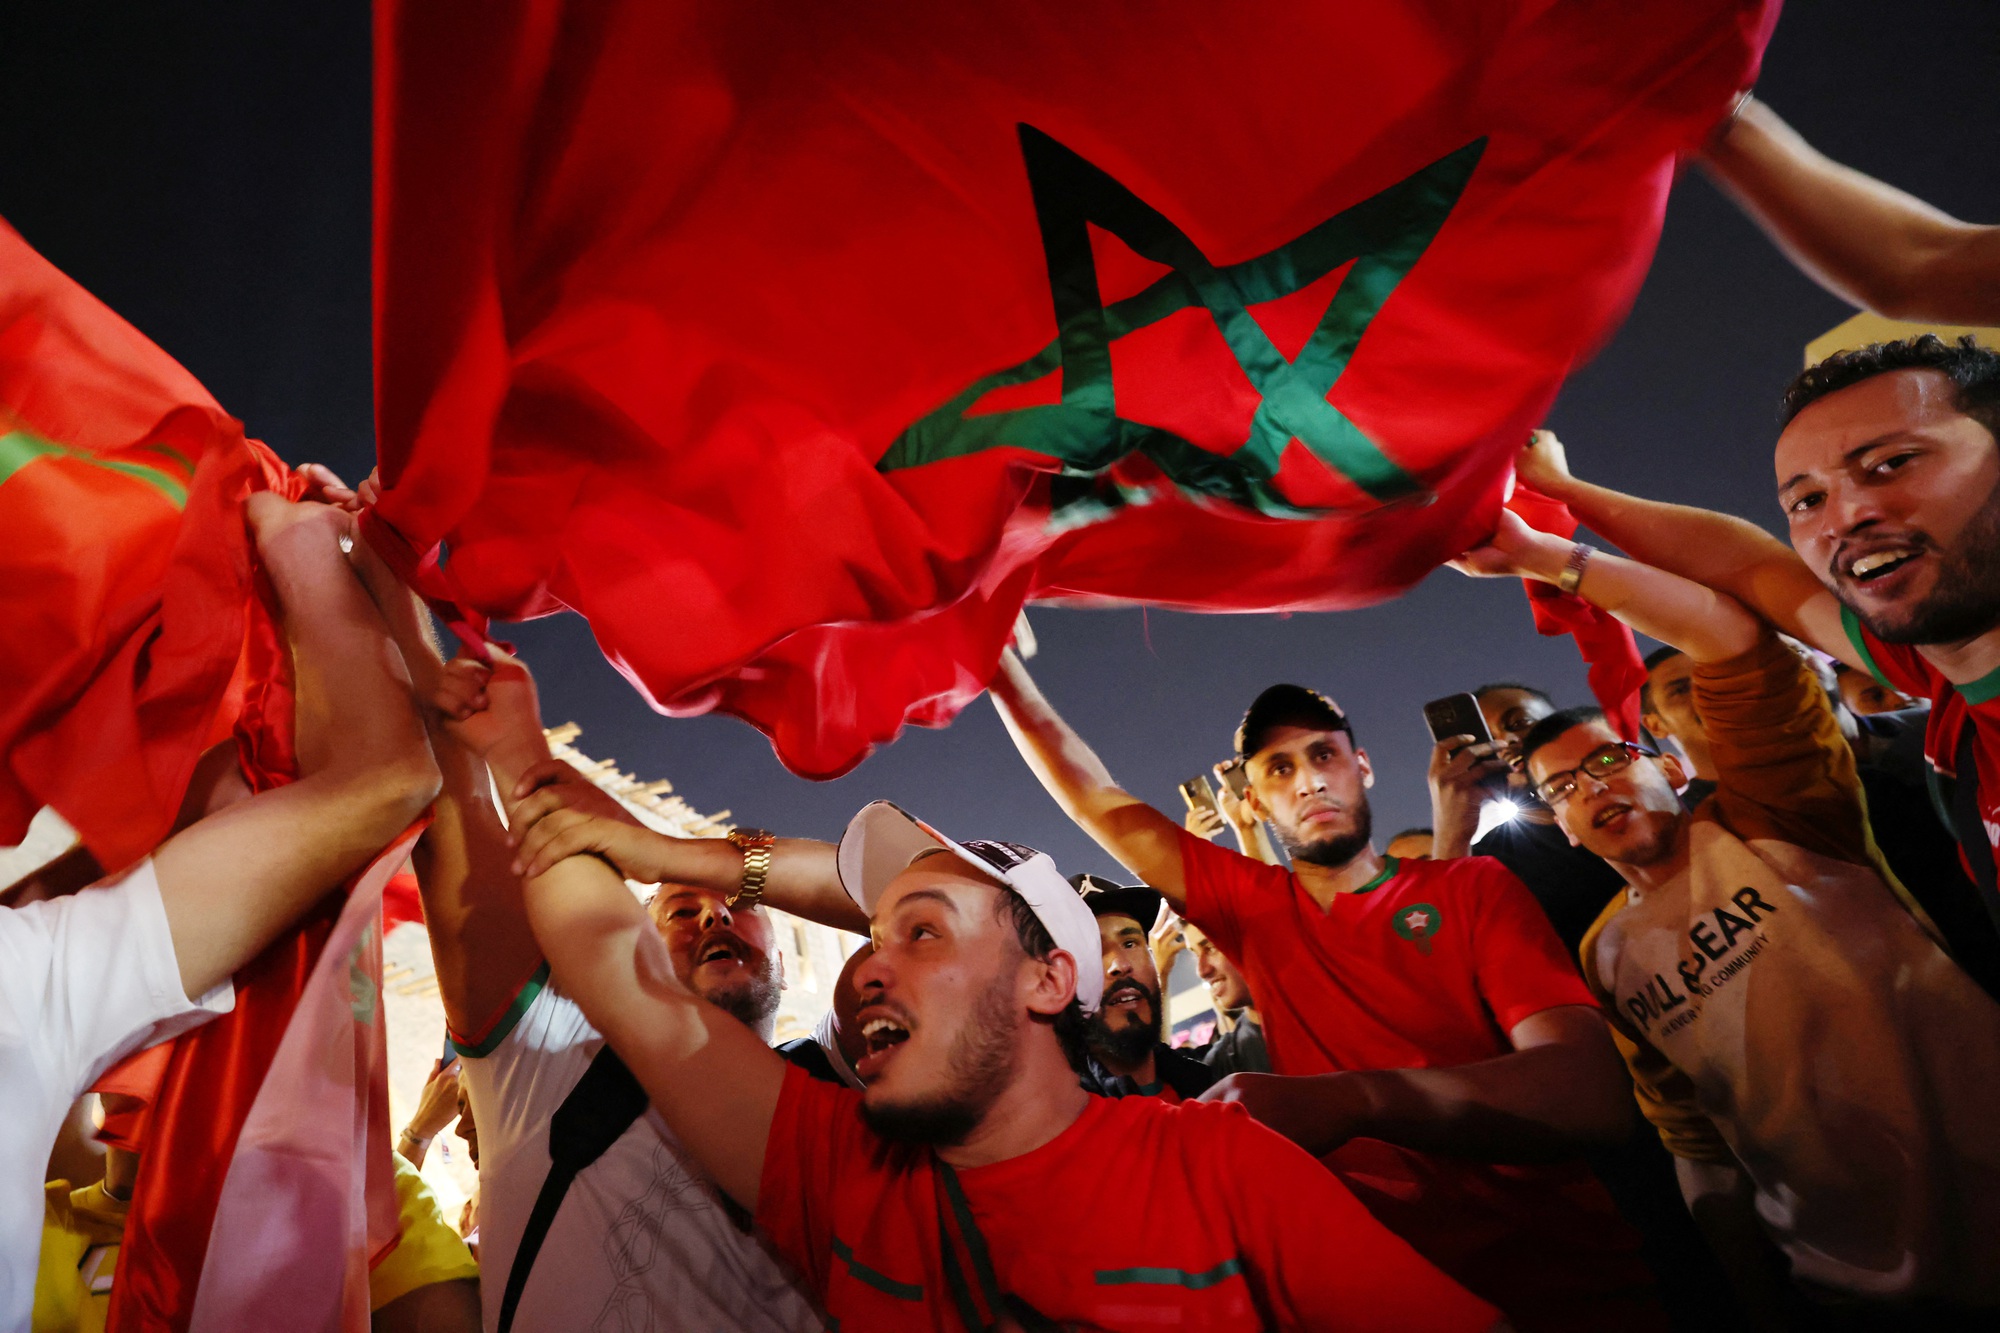 Tuyển đội Morocco: Tuyển đội bóng đá Morocco luôn là một đối thủ đáng gờm trên sân cỏ. Với sự kết hợp tuyệt vời giữa kĩ năng và tinh thần đội nhóm, đội tuyển Morocco đã từng gây sốc tại các giải đấu quốc tế. Hãy cùng xem những pha bóng đẹp và kịch tính của đội tuyển Morocco.